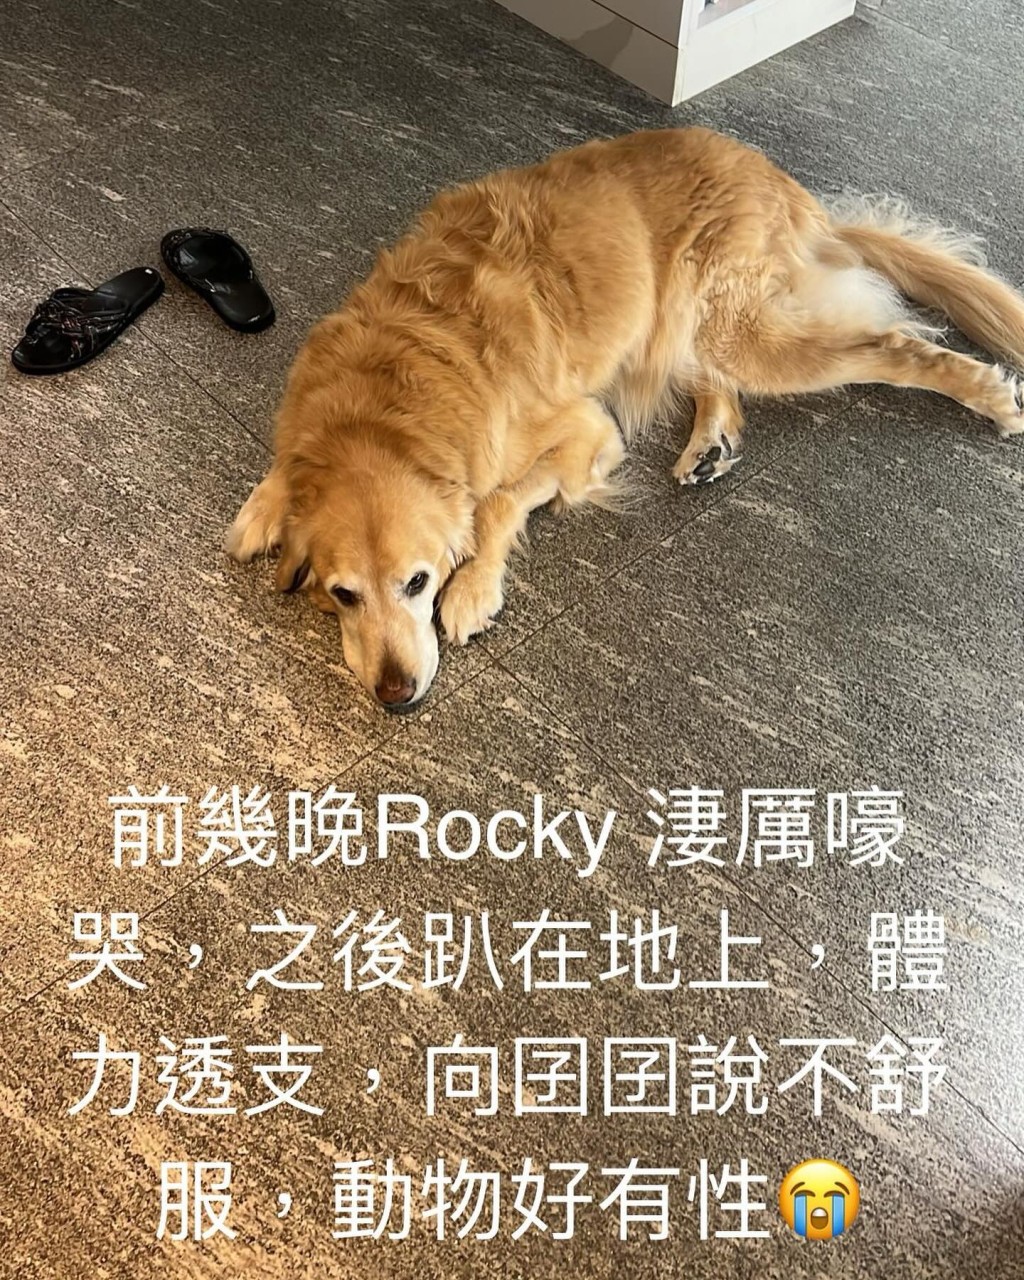 馬德鐘，透露愛犬Rocky日前淒厲嚎哭，後體力透支趴在地上，似是向囝囝馬在驤示意不舒服。